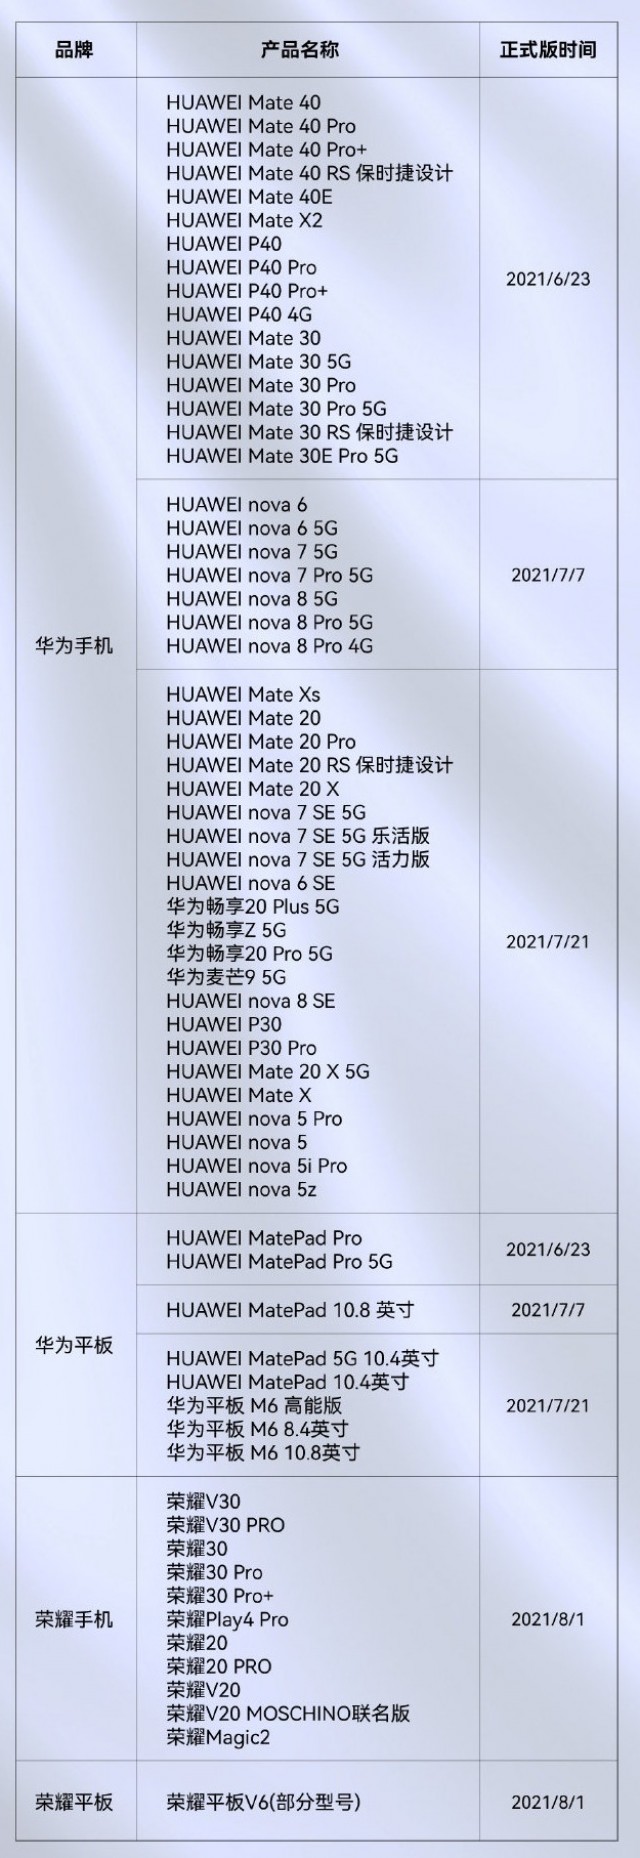 يتوفر HarmonyOS المستقر الآن لـ 65 جهاز من أجهزة Honor و Huawei